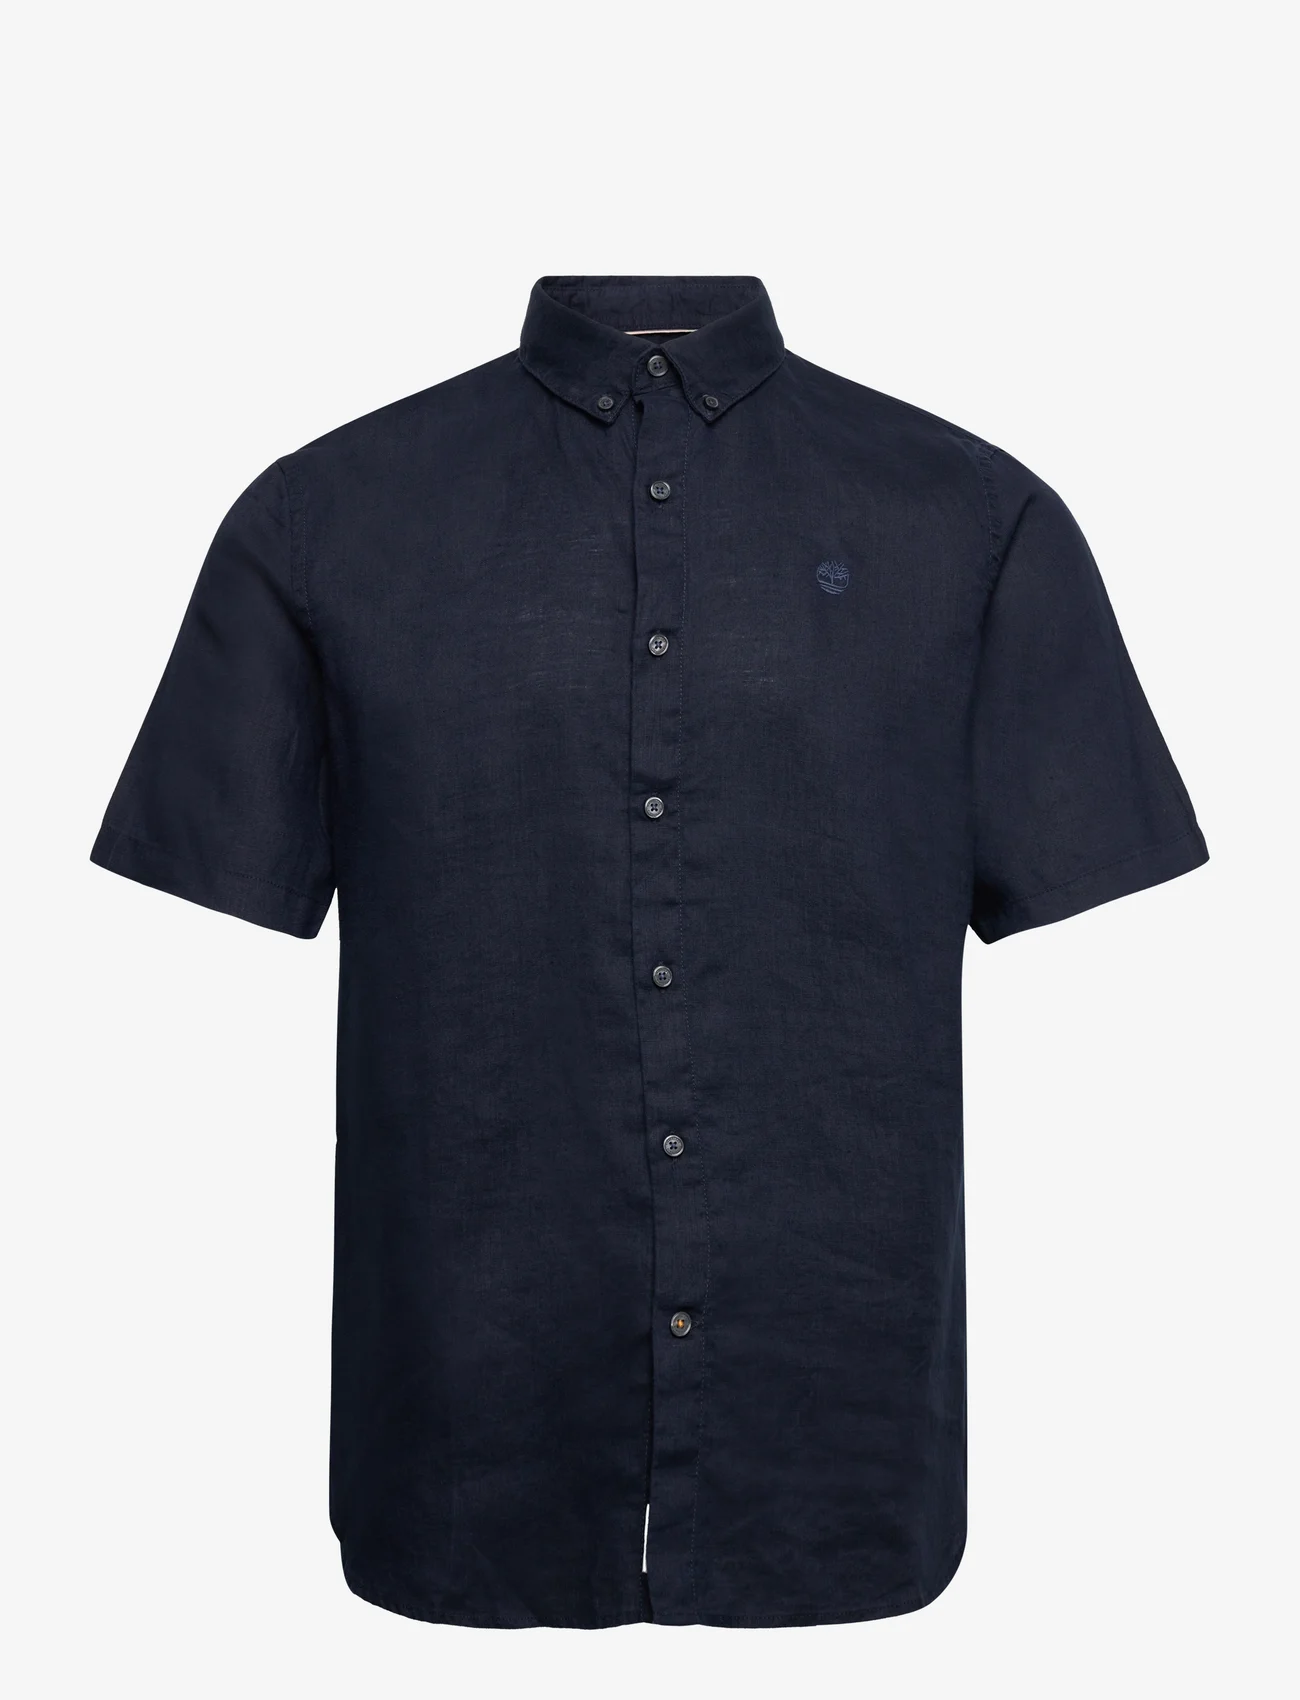 Timberland - MILL BROOK Linen Short Sleeve Shirt DARK SAPPHIRE - lina krekli - dark sapphire - 0